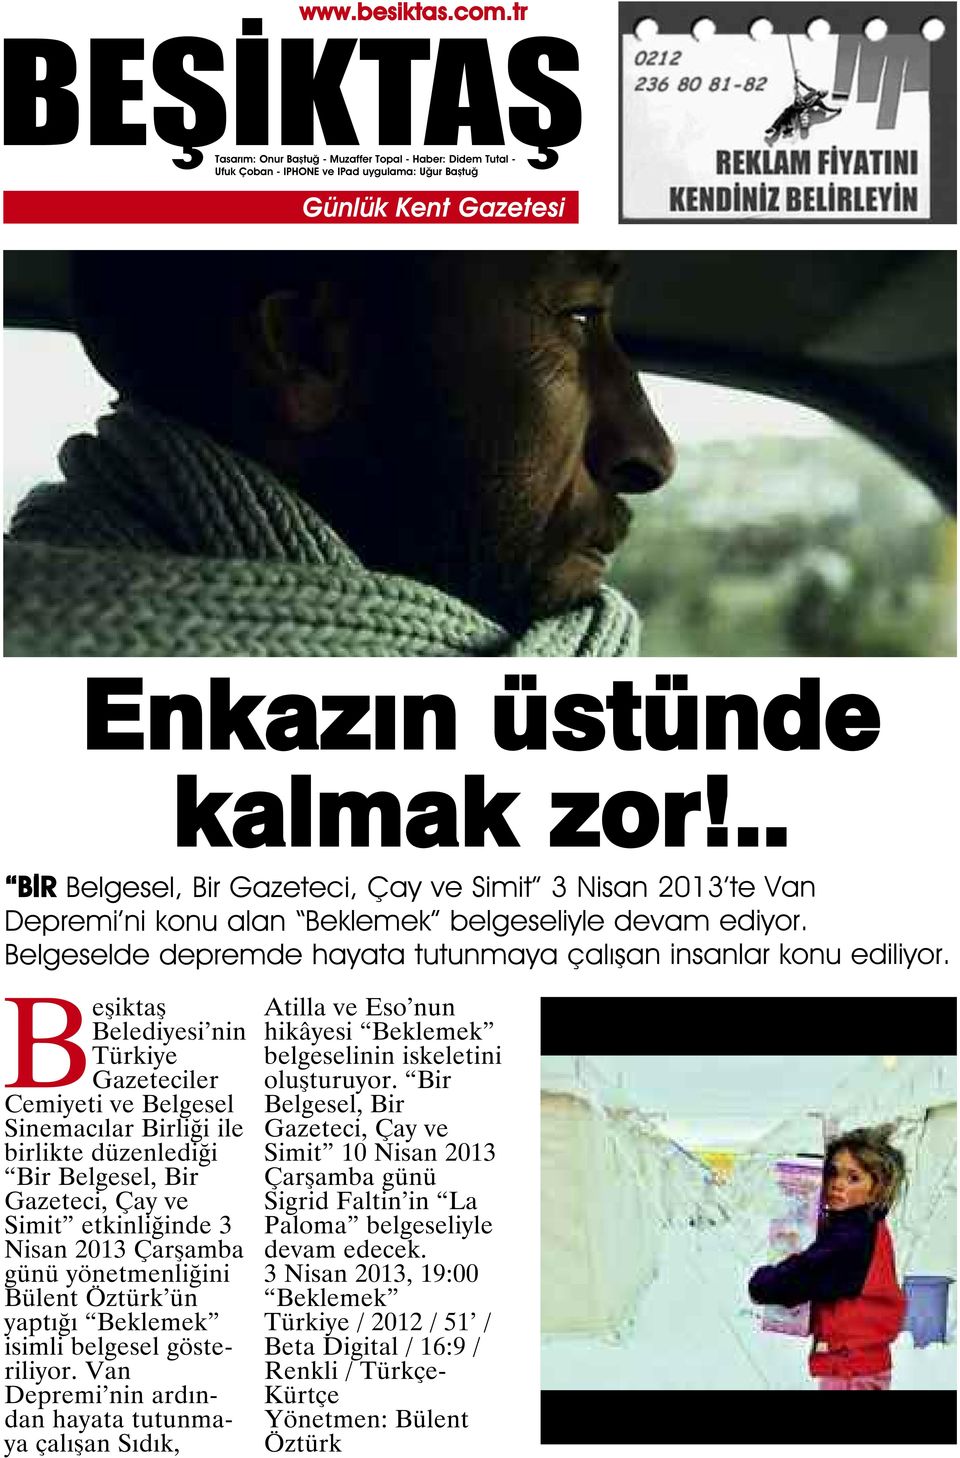 Beşiktaş Belediyesi nin Türkiye Gazeteciler Cemiyeti ve Belgesel Sinemacılar Birliği ile birlikte düzenlediği Bir Belgesel, Bir Gazeteci, Çay ve Simit etkinliğinde 3 Nisan 2013 Çarşamba günü